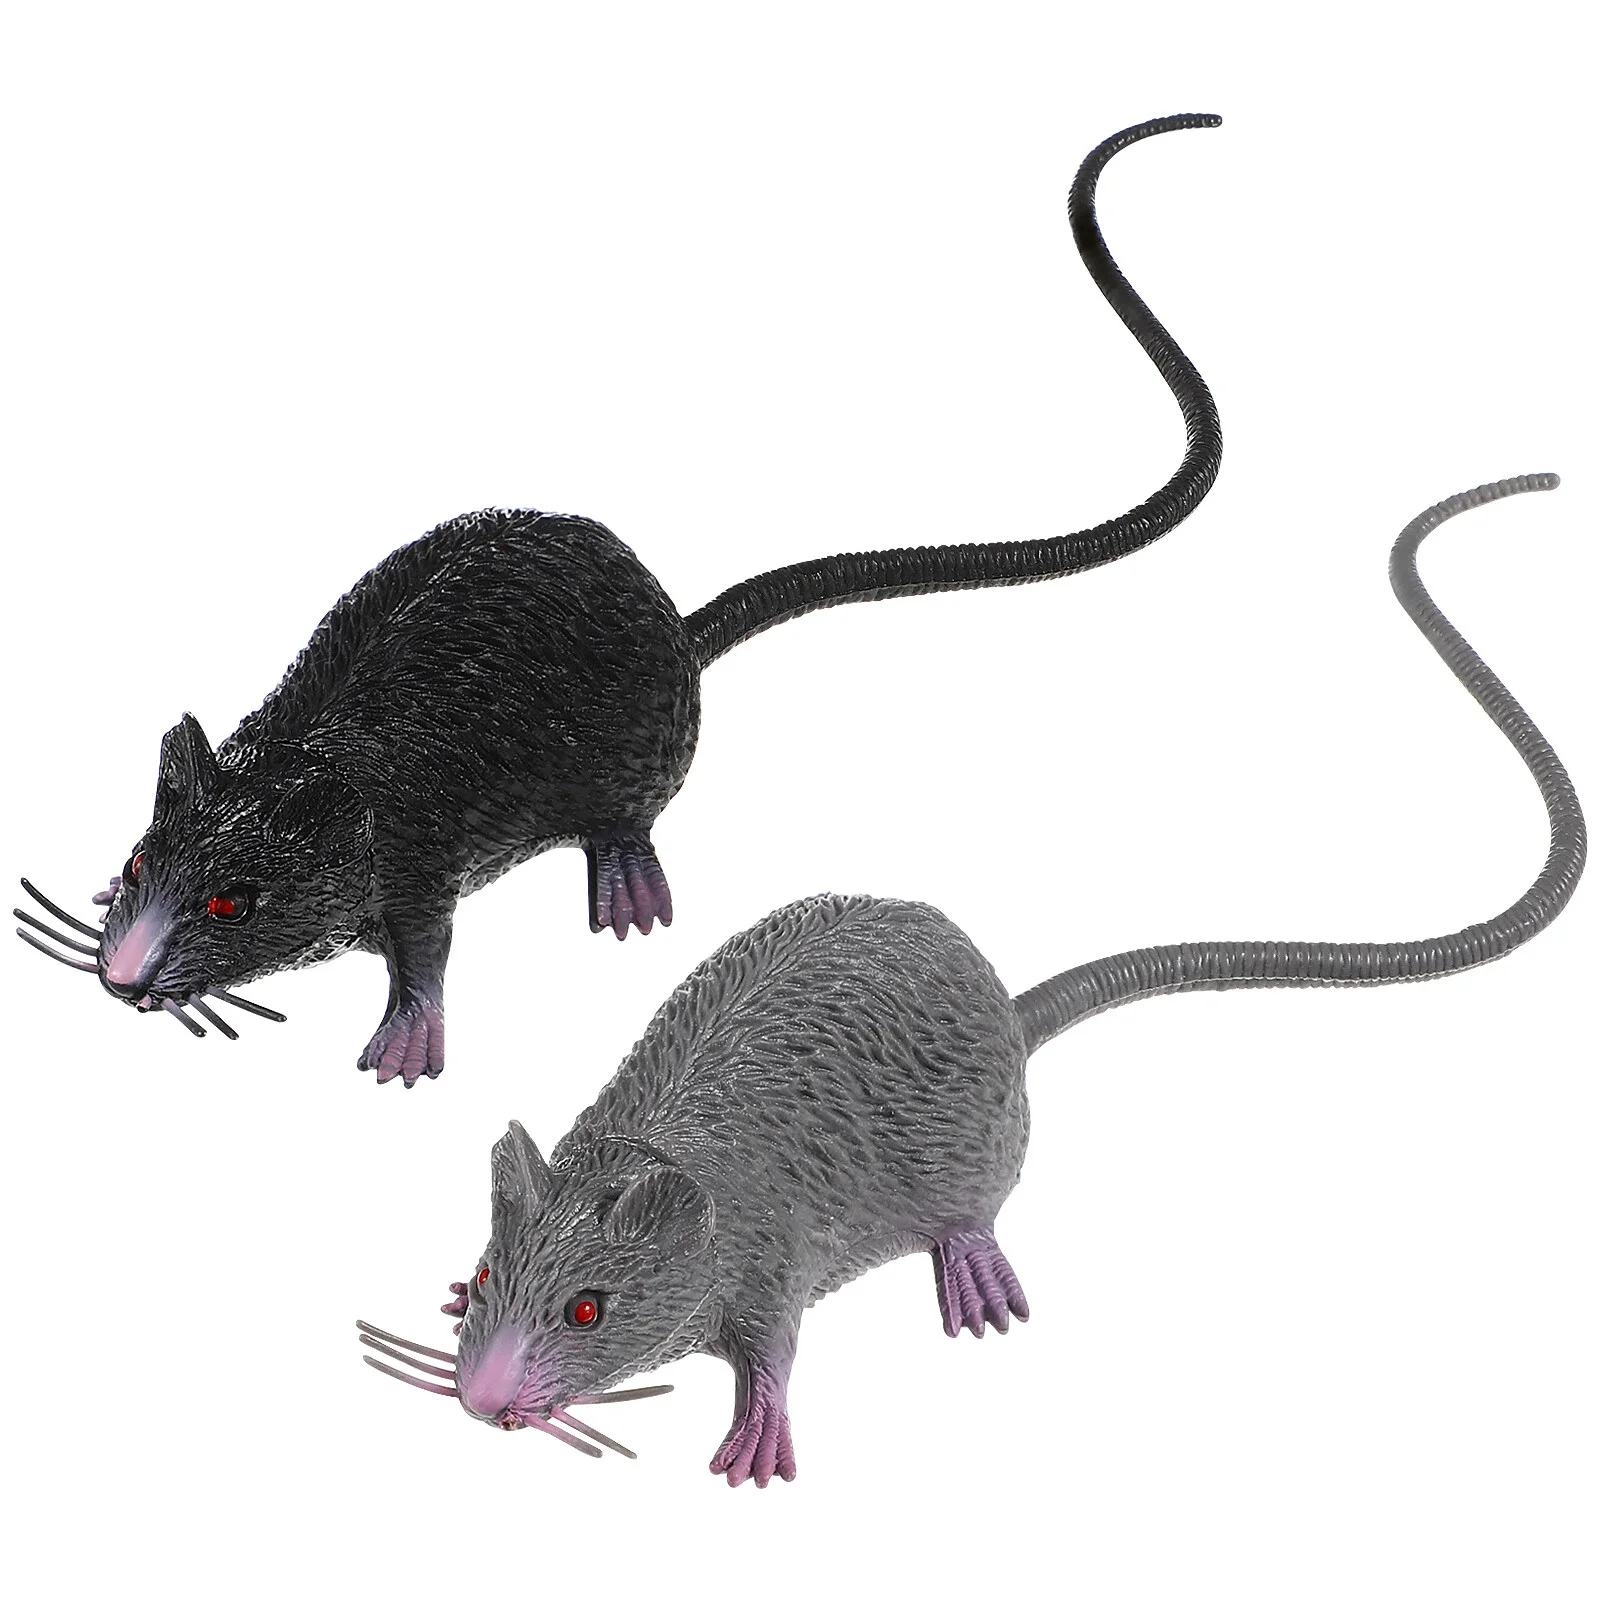 

2pcs Realistic Mice Toy Spooky Rat Toy Halloween Prank Toy Creepy Halloween Decor Medium Size (Black, Gray)